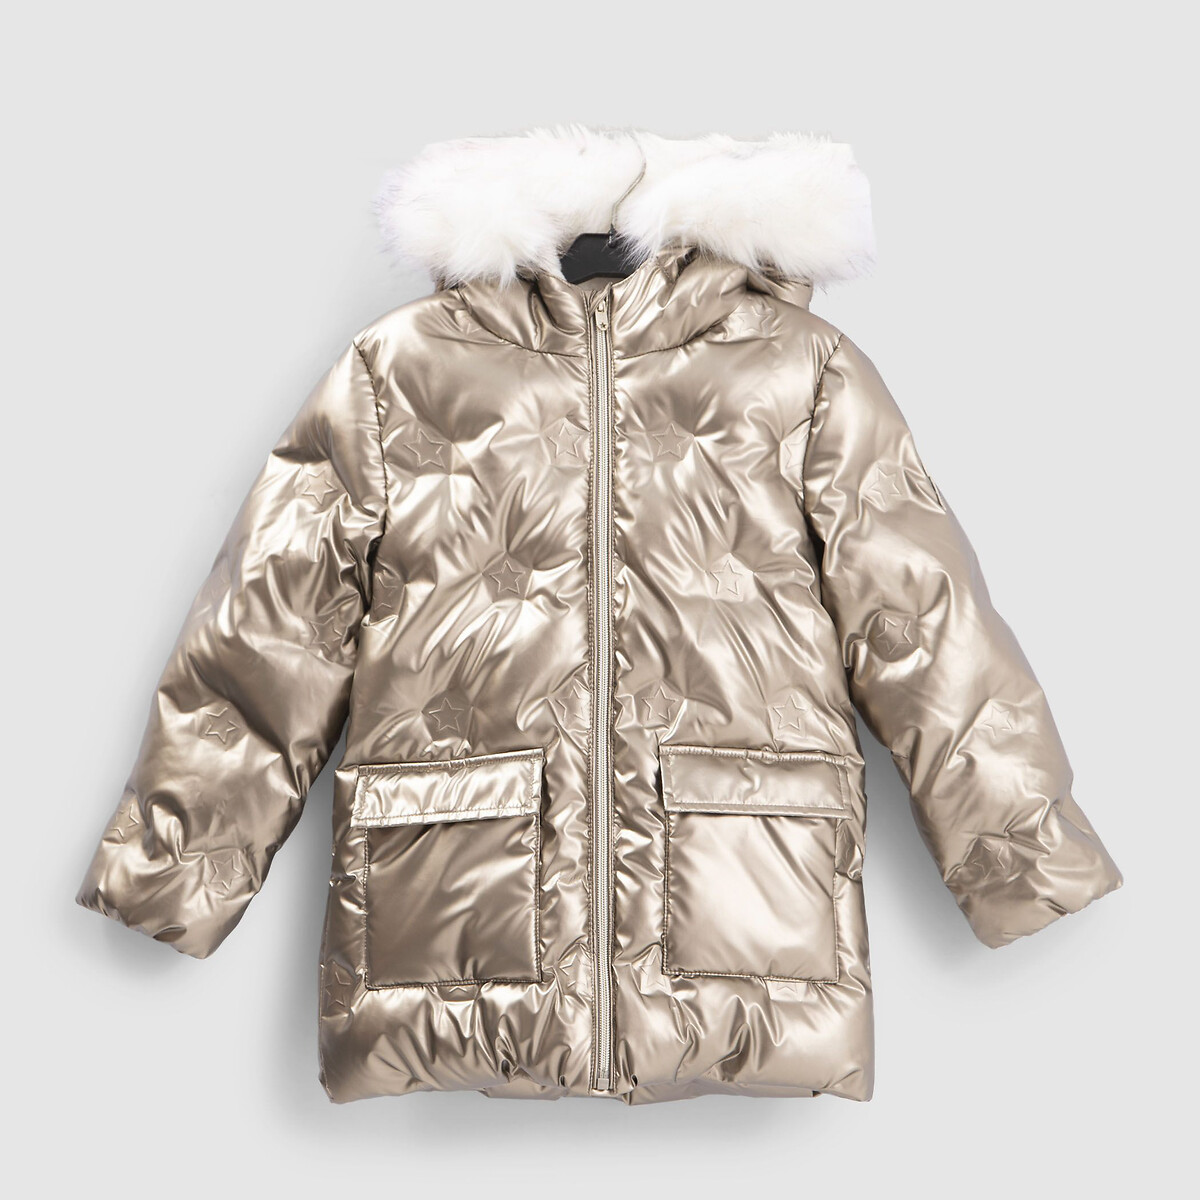 Куртка Стеганая с пришитым капюшоном зимняя модель 4-14 лет 6 лет - 114 см золотистый LaRedoute, размер 6 лет - 114 см